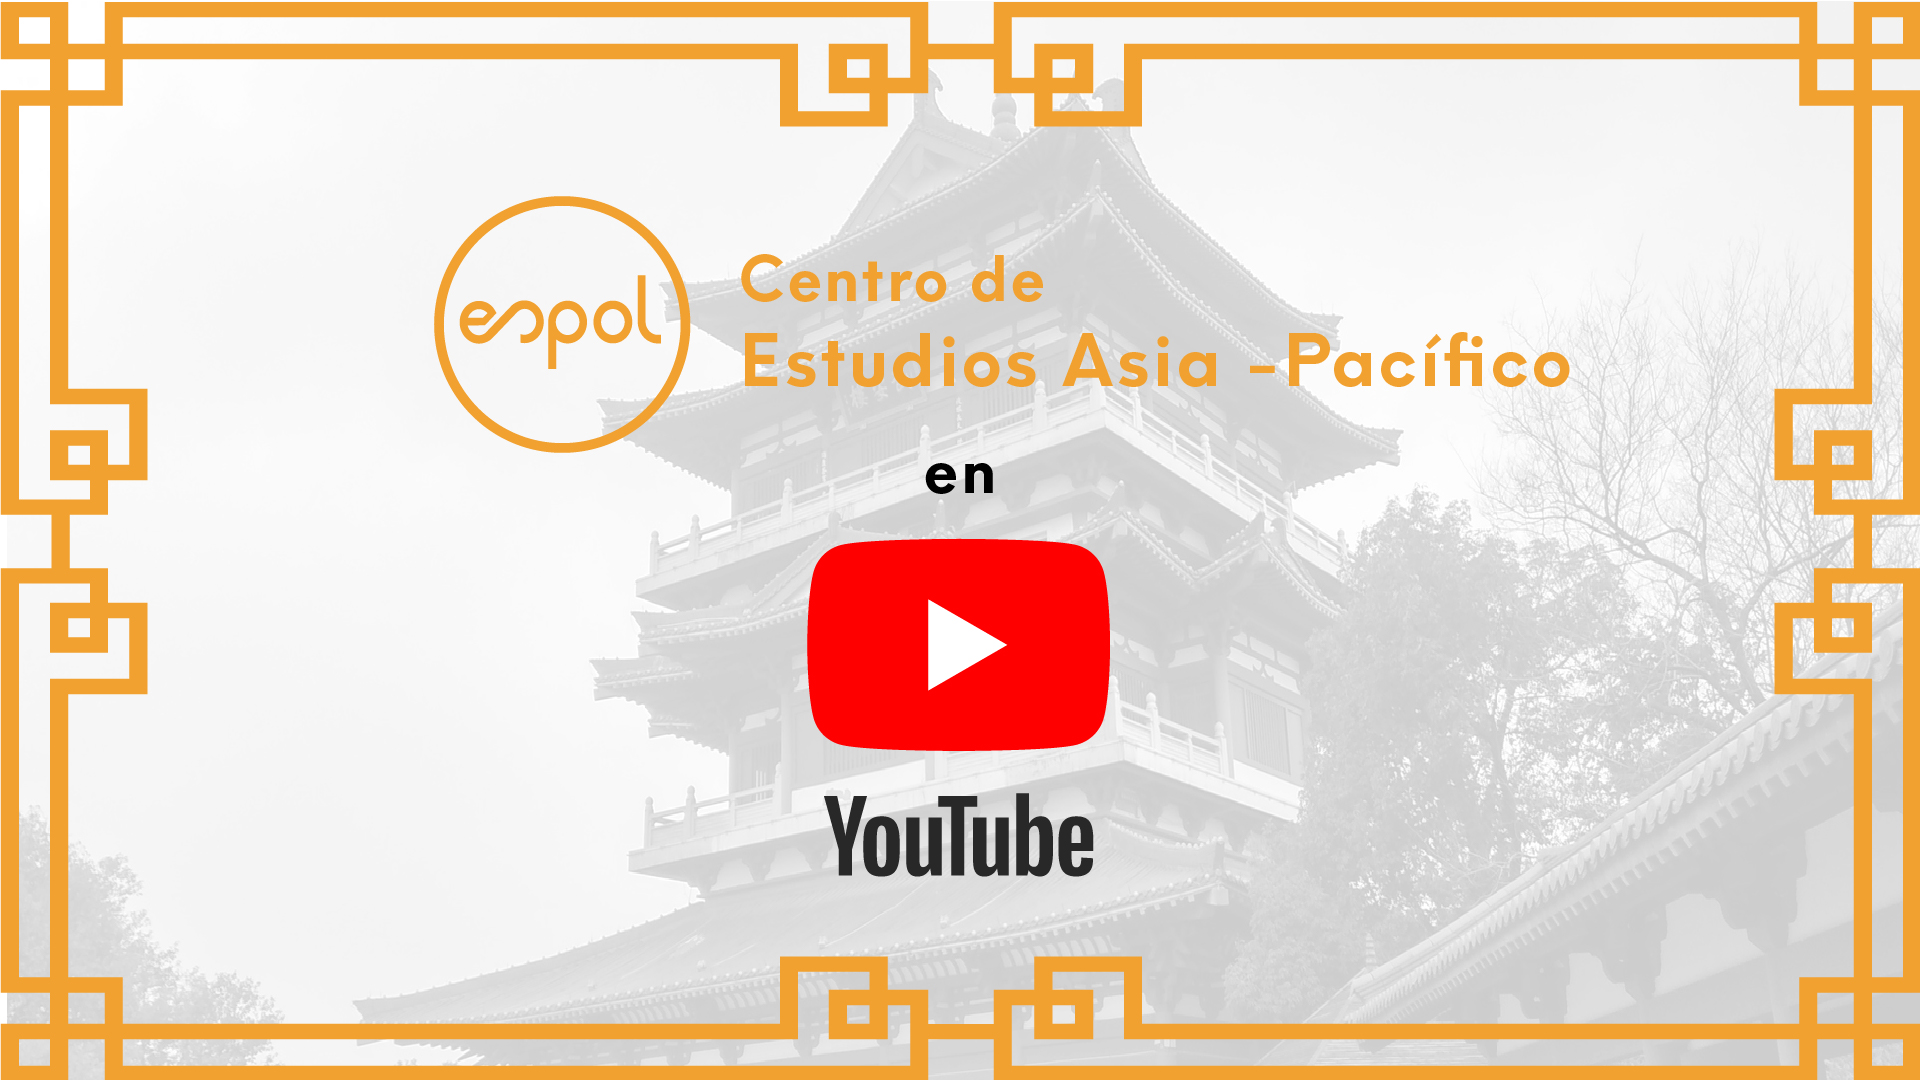 ¡El Centro de Estudios Asia-Pacífico en YouTube!